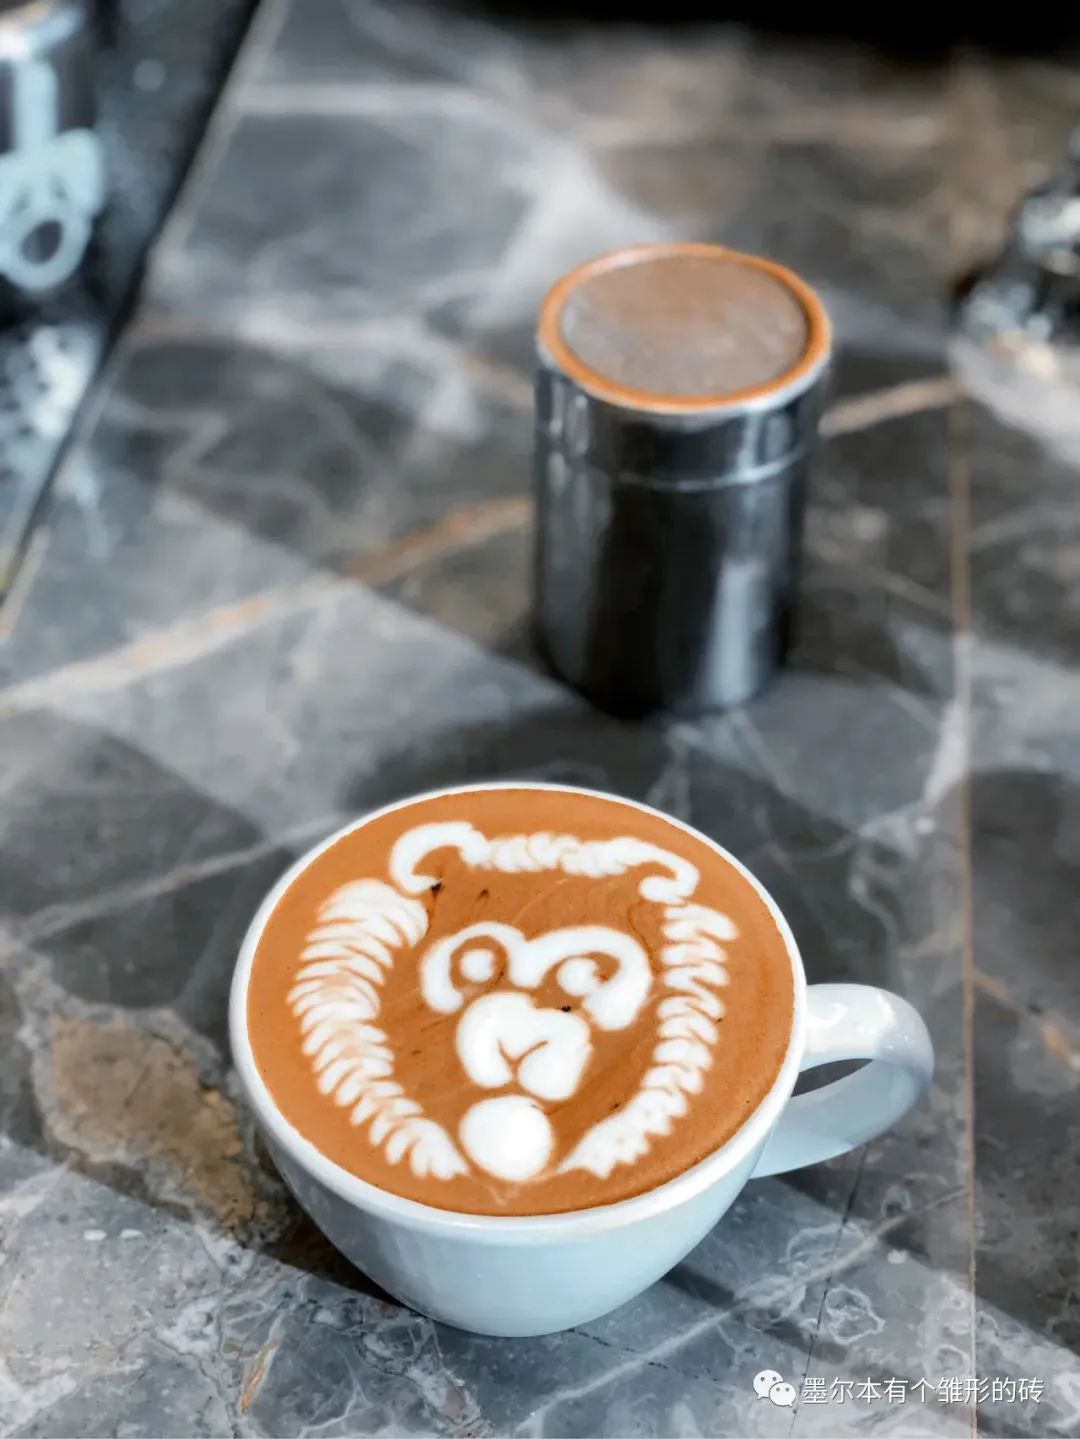 当咖啡师生活在墨尔本，是随手可得的幸福感